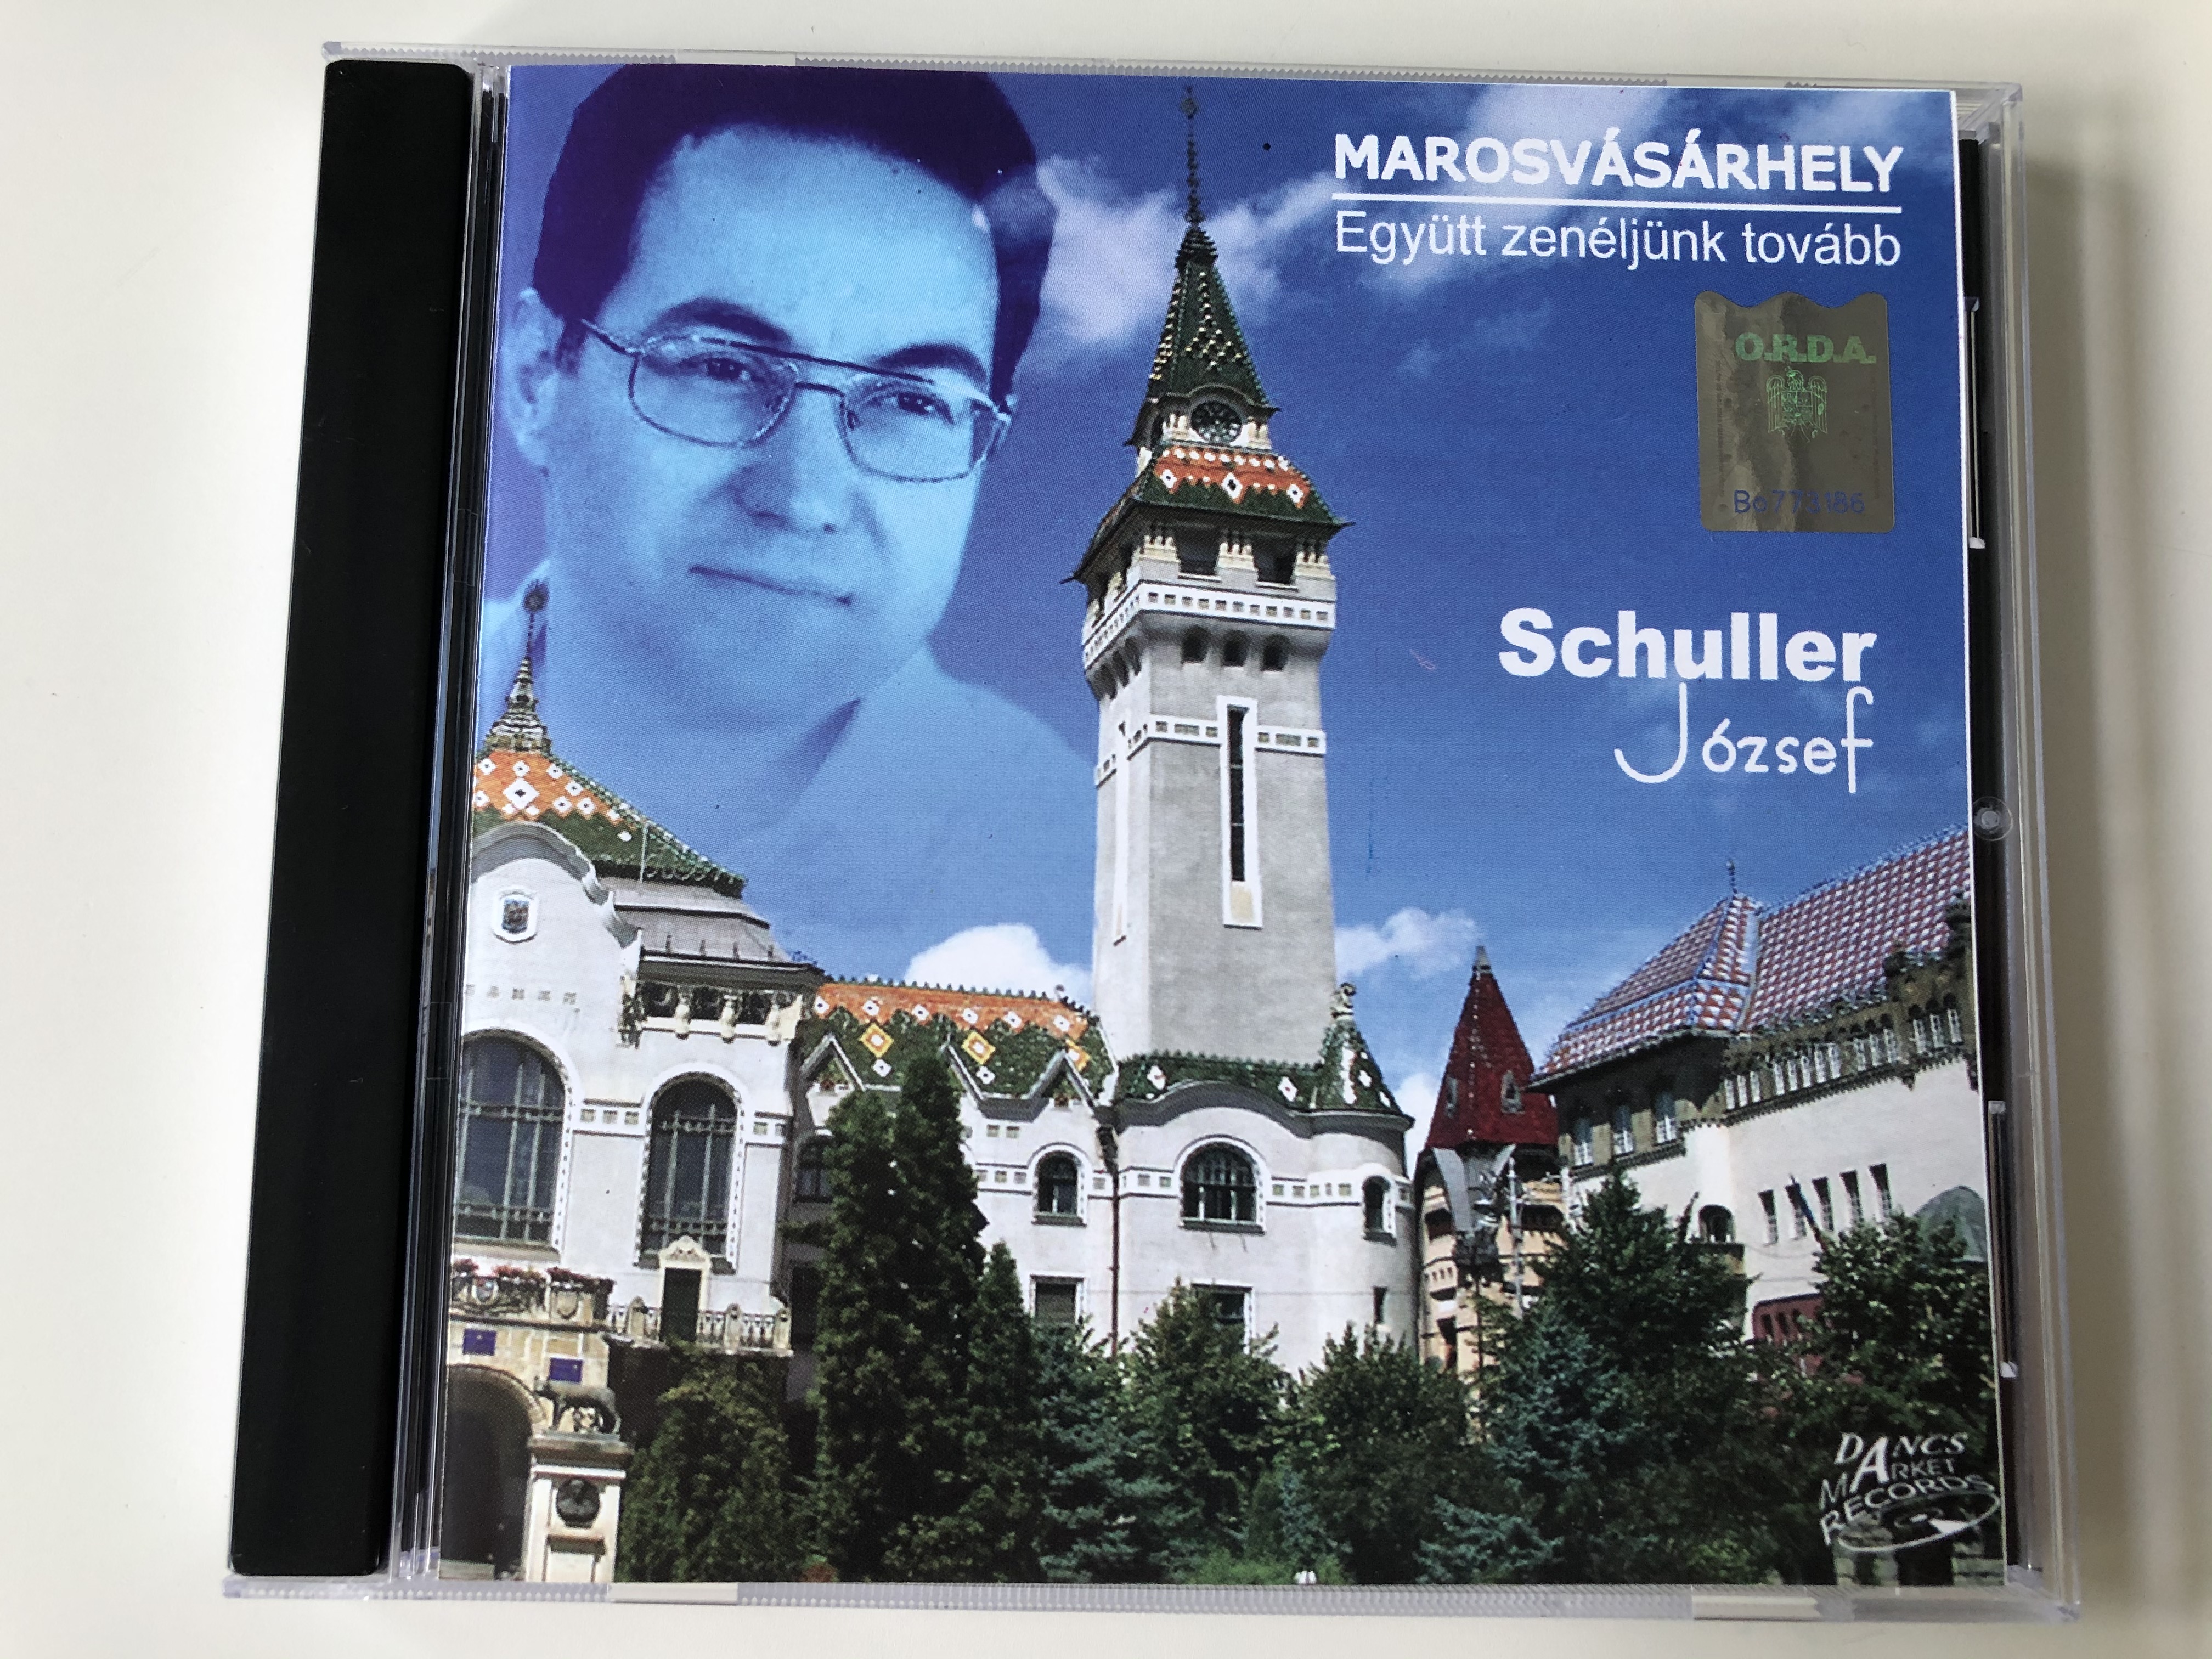 marosvasarhely-egyutt-zeneljunk-tovabb-schuller-jozsef-dancs-market-records-audio-cd-2009-dmr-141-1-.jpg